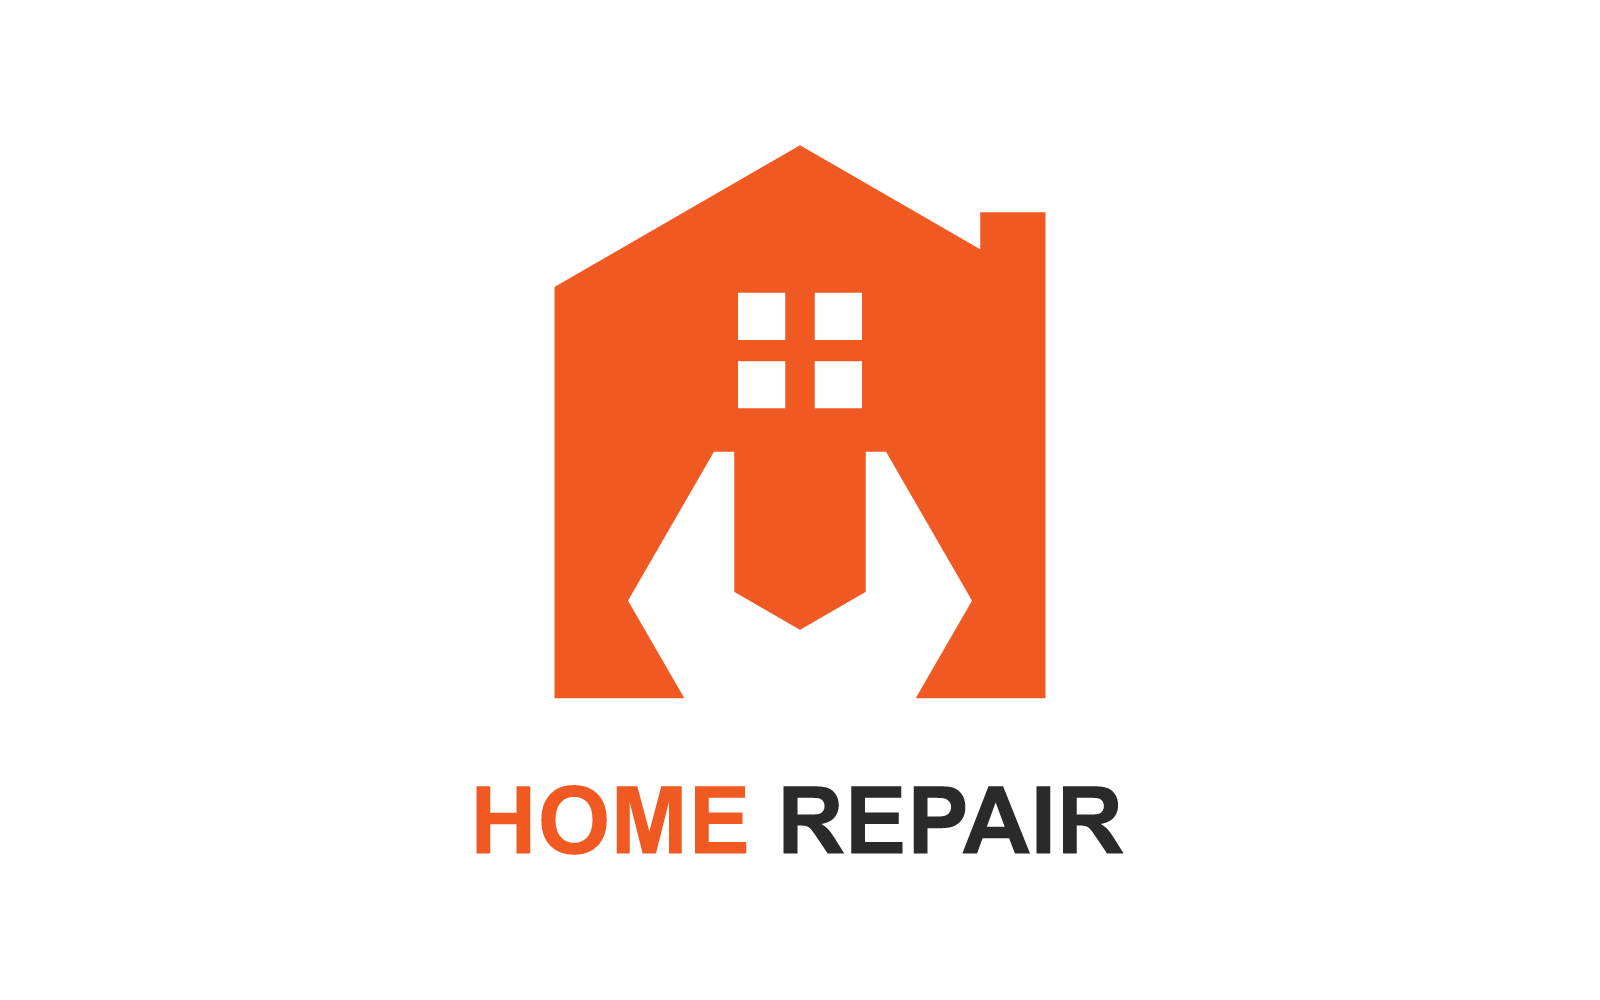 Home repair logo vector flat design template